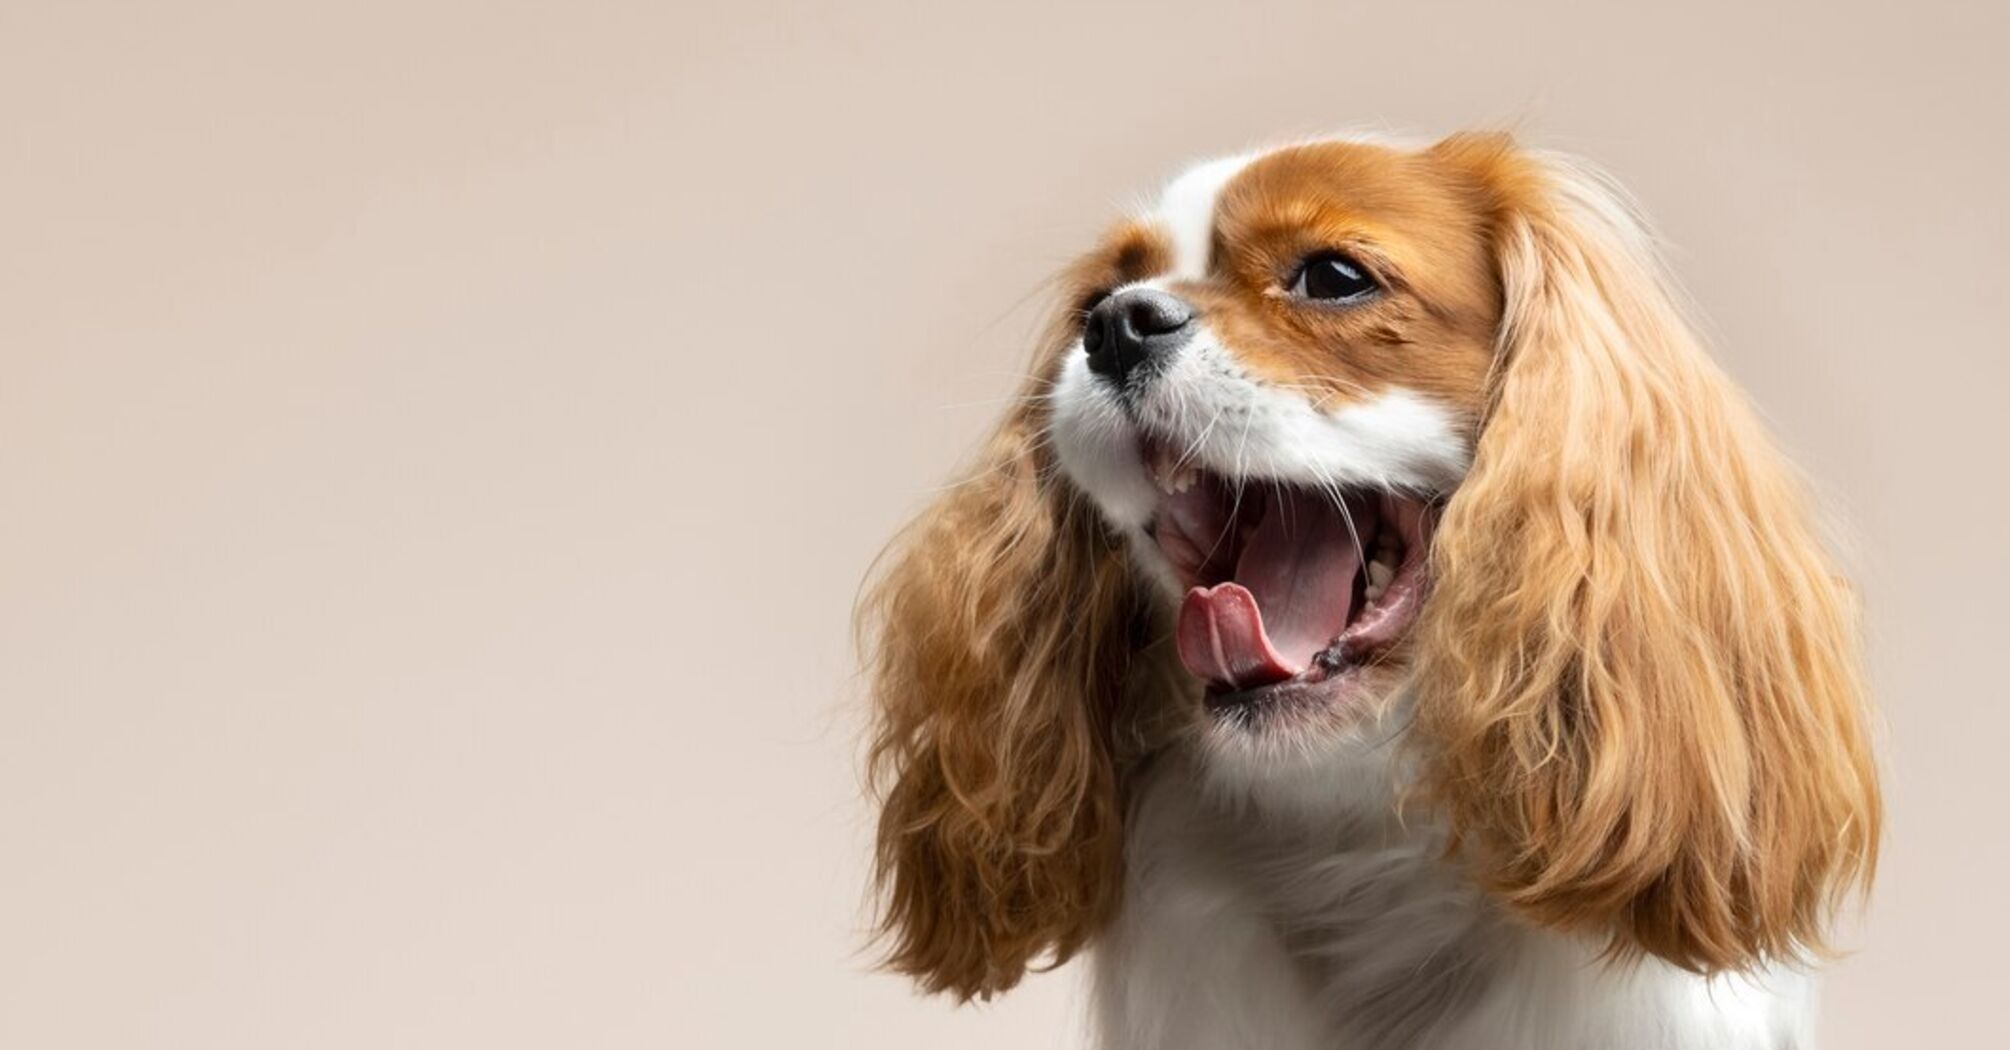 Ветеринар поделился уникальным способом успокоения испуганной собаки (видео)